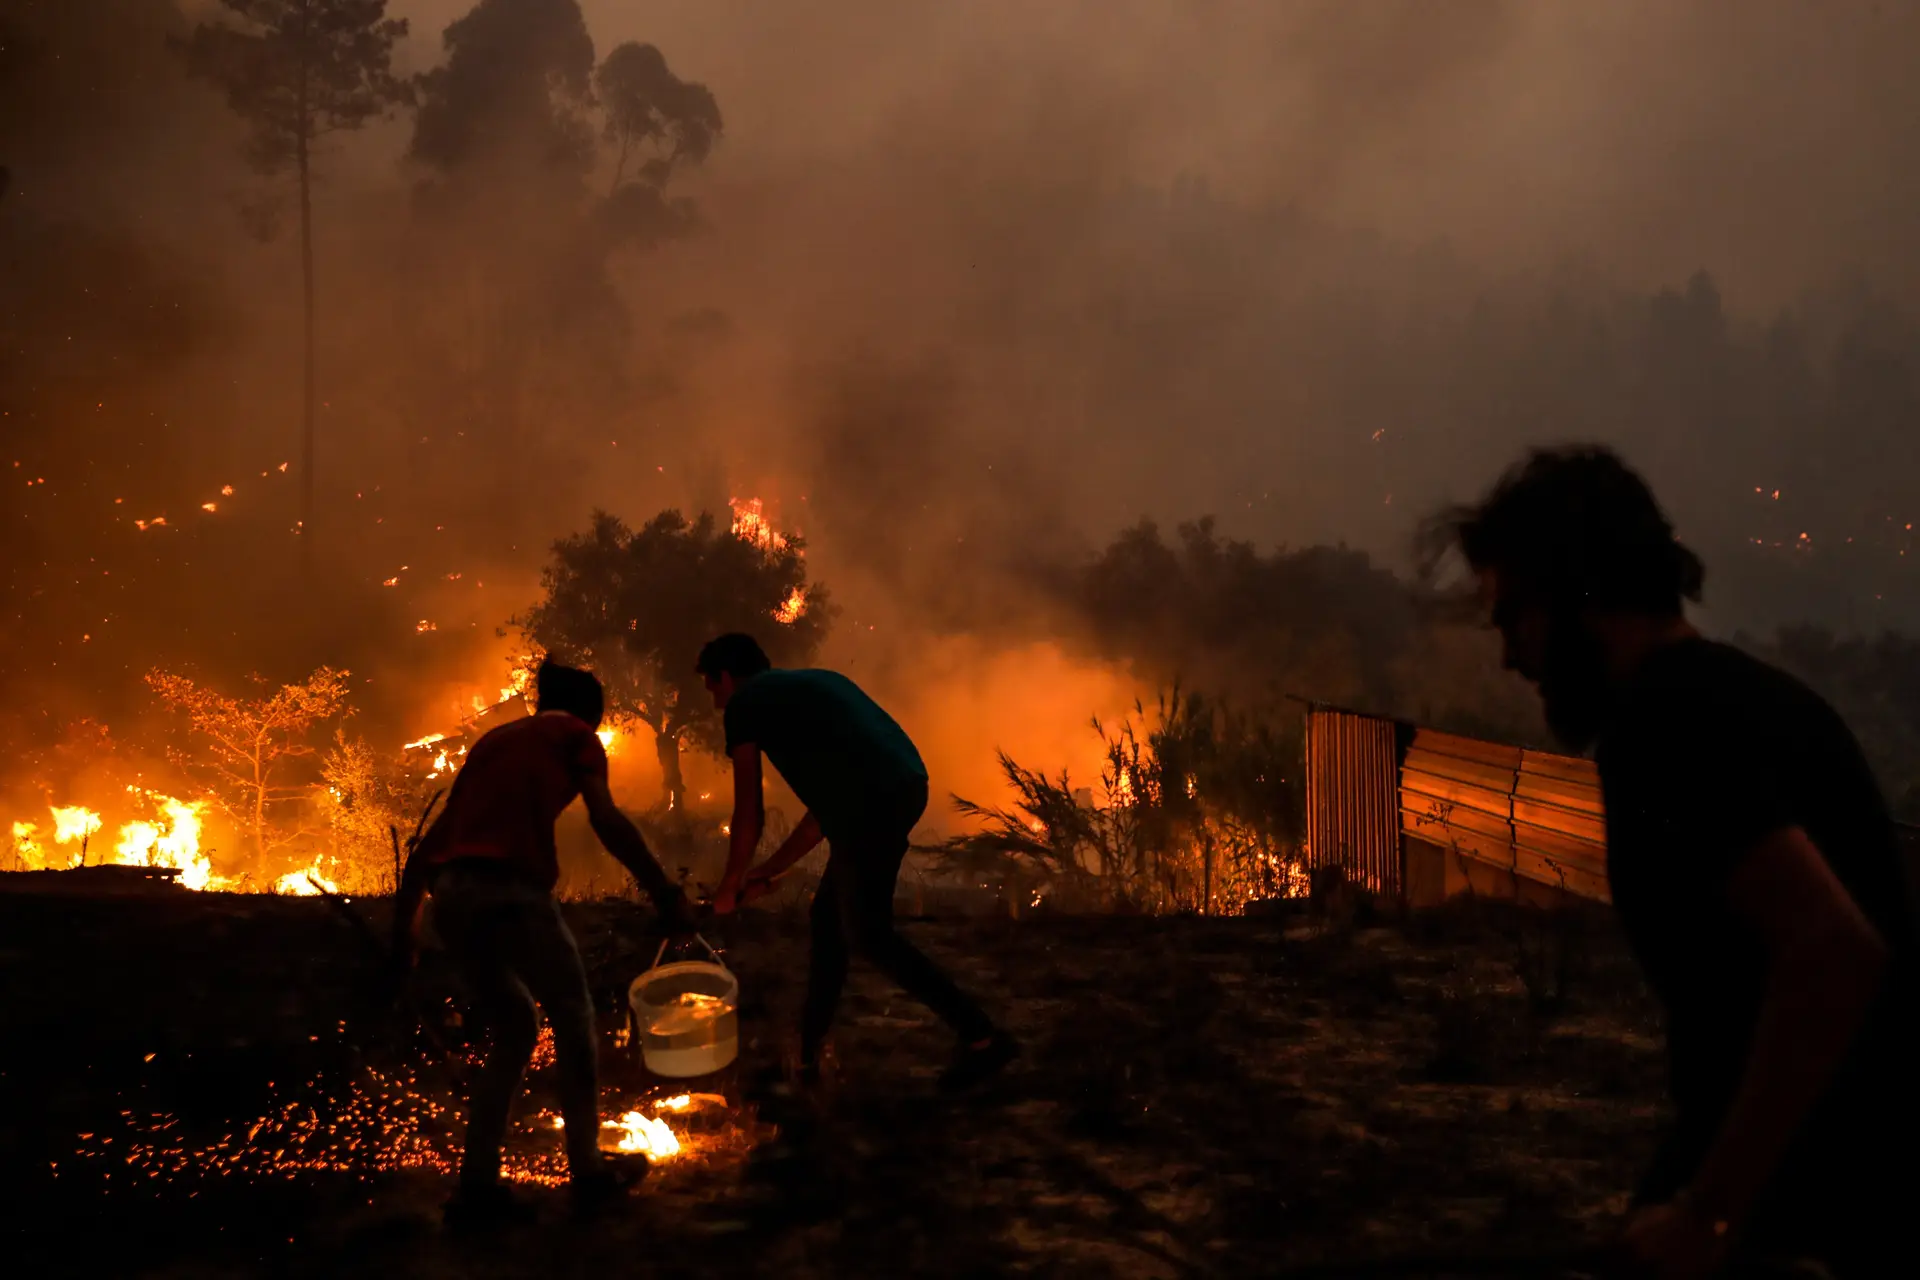 Grandes incêndios em Portugal no verão mostraram "desconhecimento" e "insuficiente qualificação" de alguns comandantes, conclui estudo